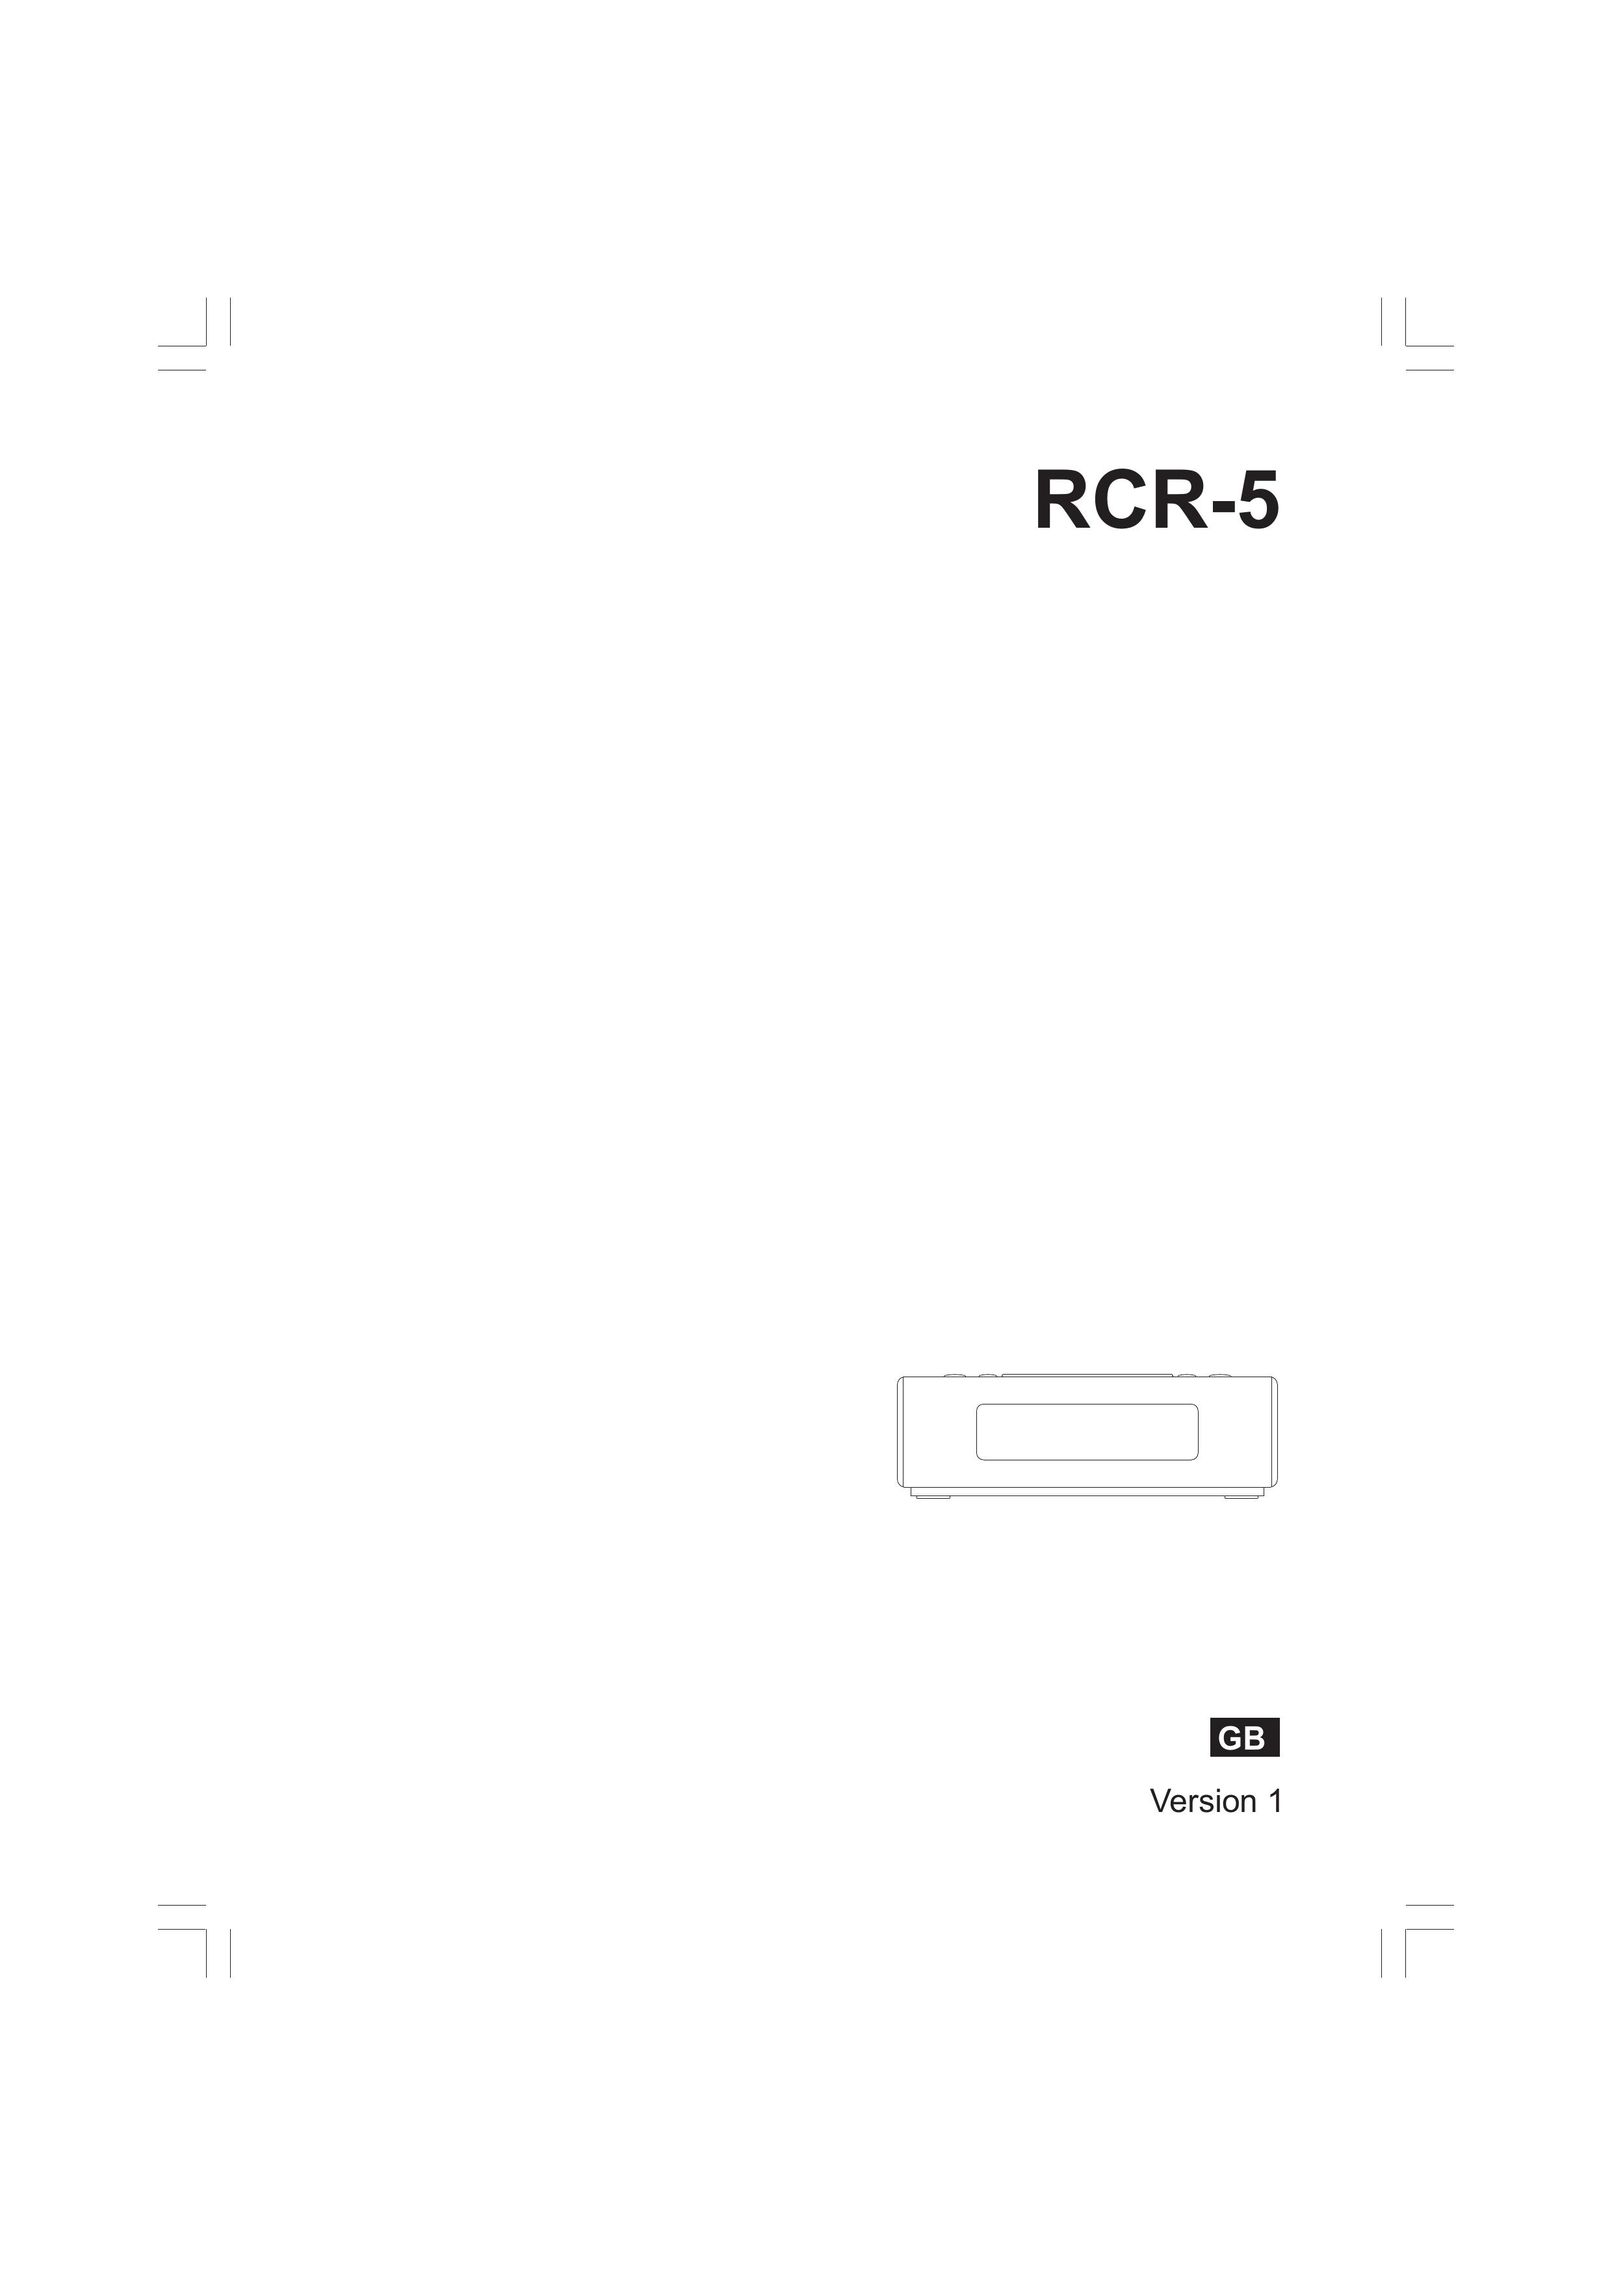 Sangean Electronics RCR-5 Car Satellite Radio System User Manual